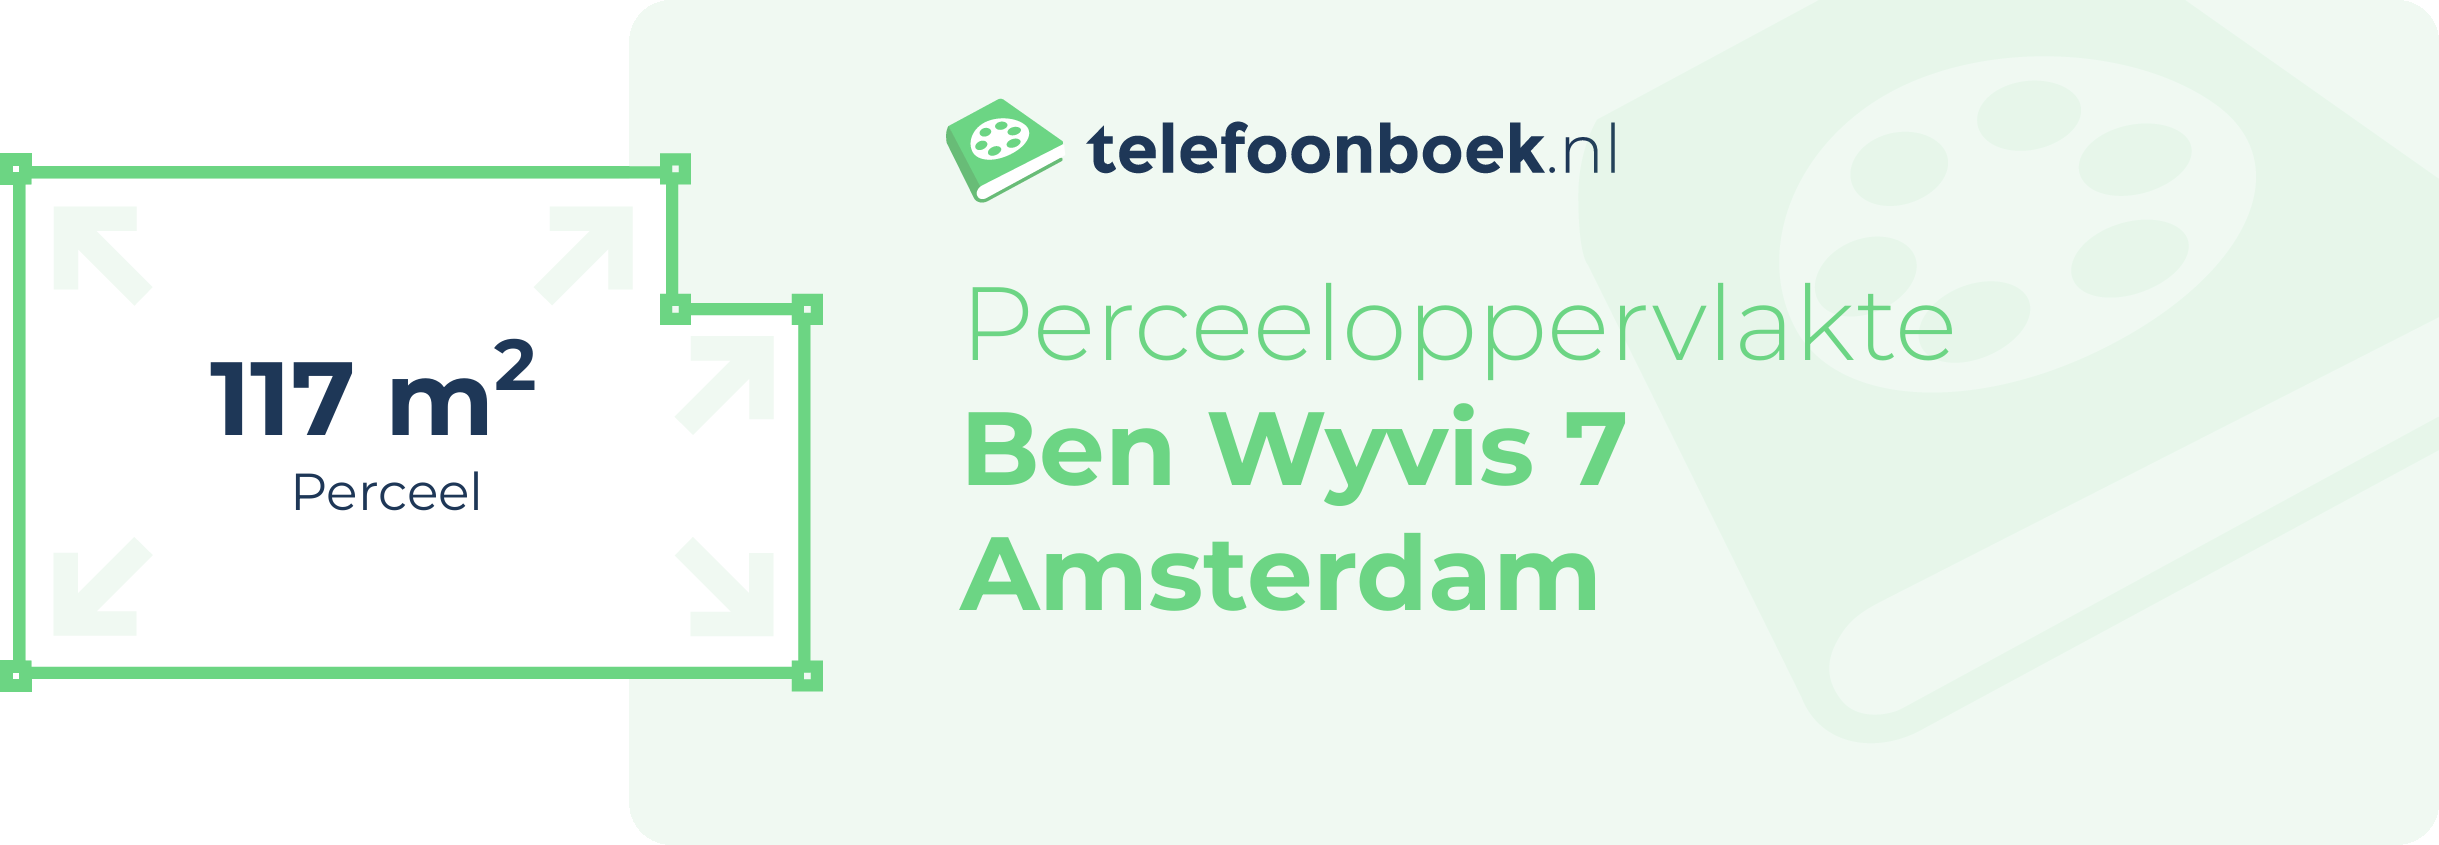 Perceeloppervlakte Ben Wyvis 7 Amsterdam